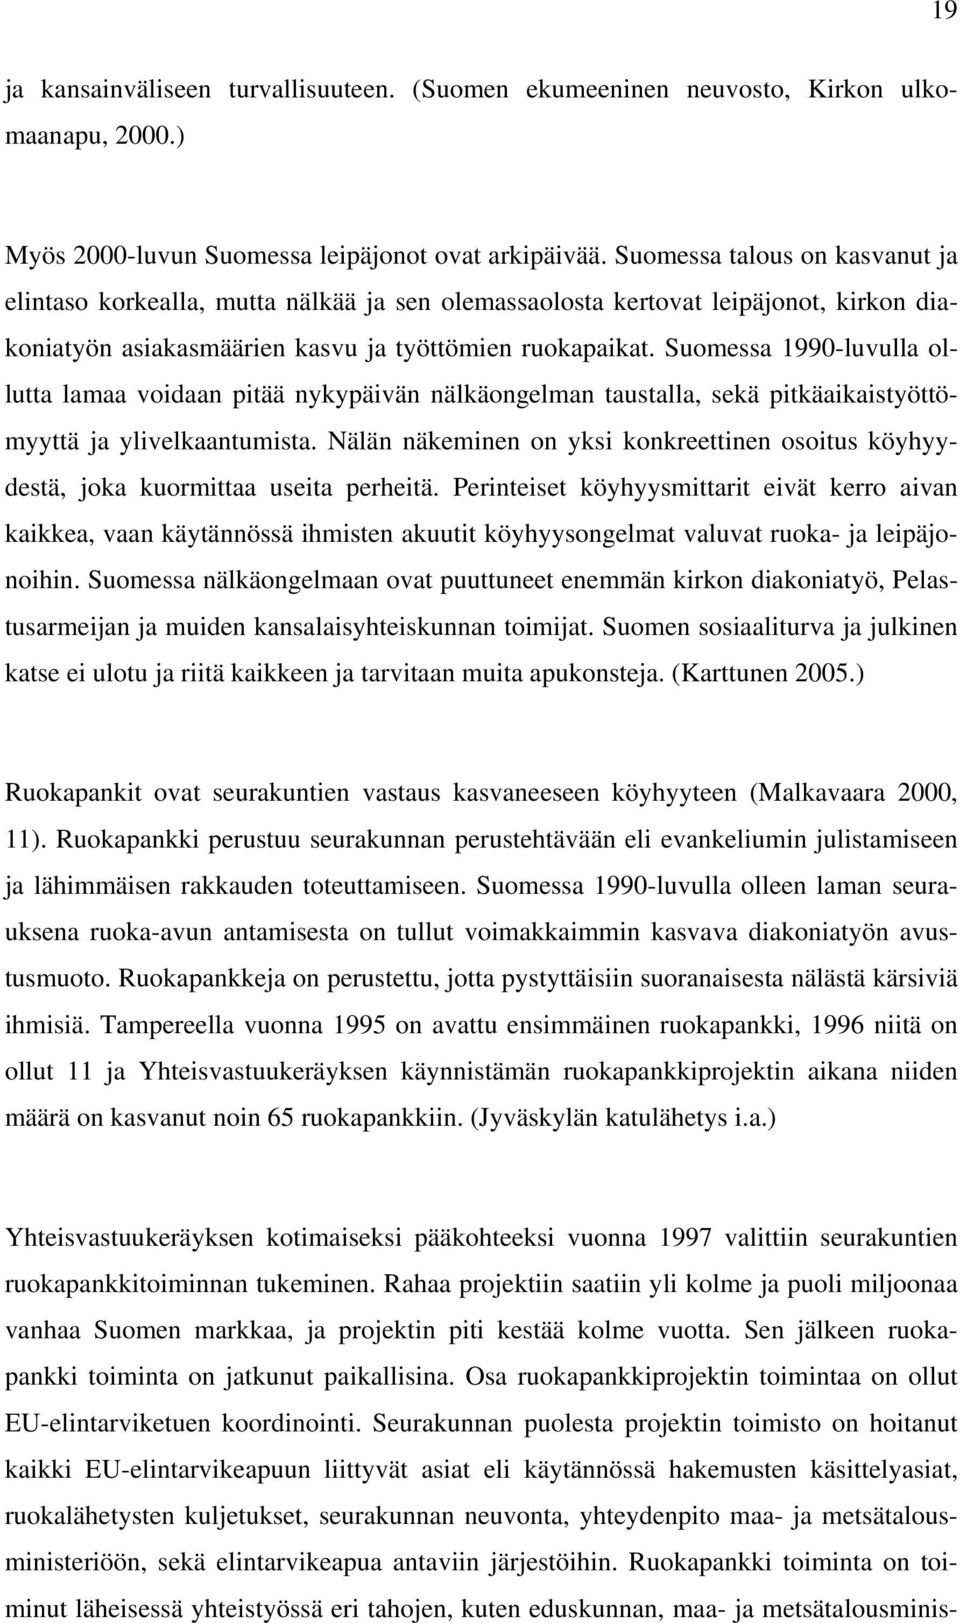 Suomessa 1990-luvulla ollutta lamaa voidaan pitää nykypäivän nälkäongelman taustalla, sekä pitkäaikaistyöttömyyttä ja ylivelkaantumista.